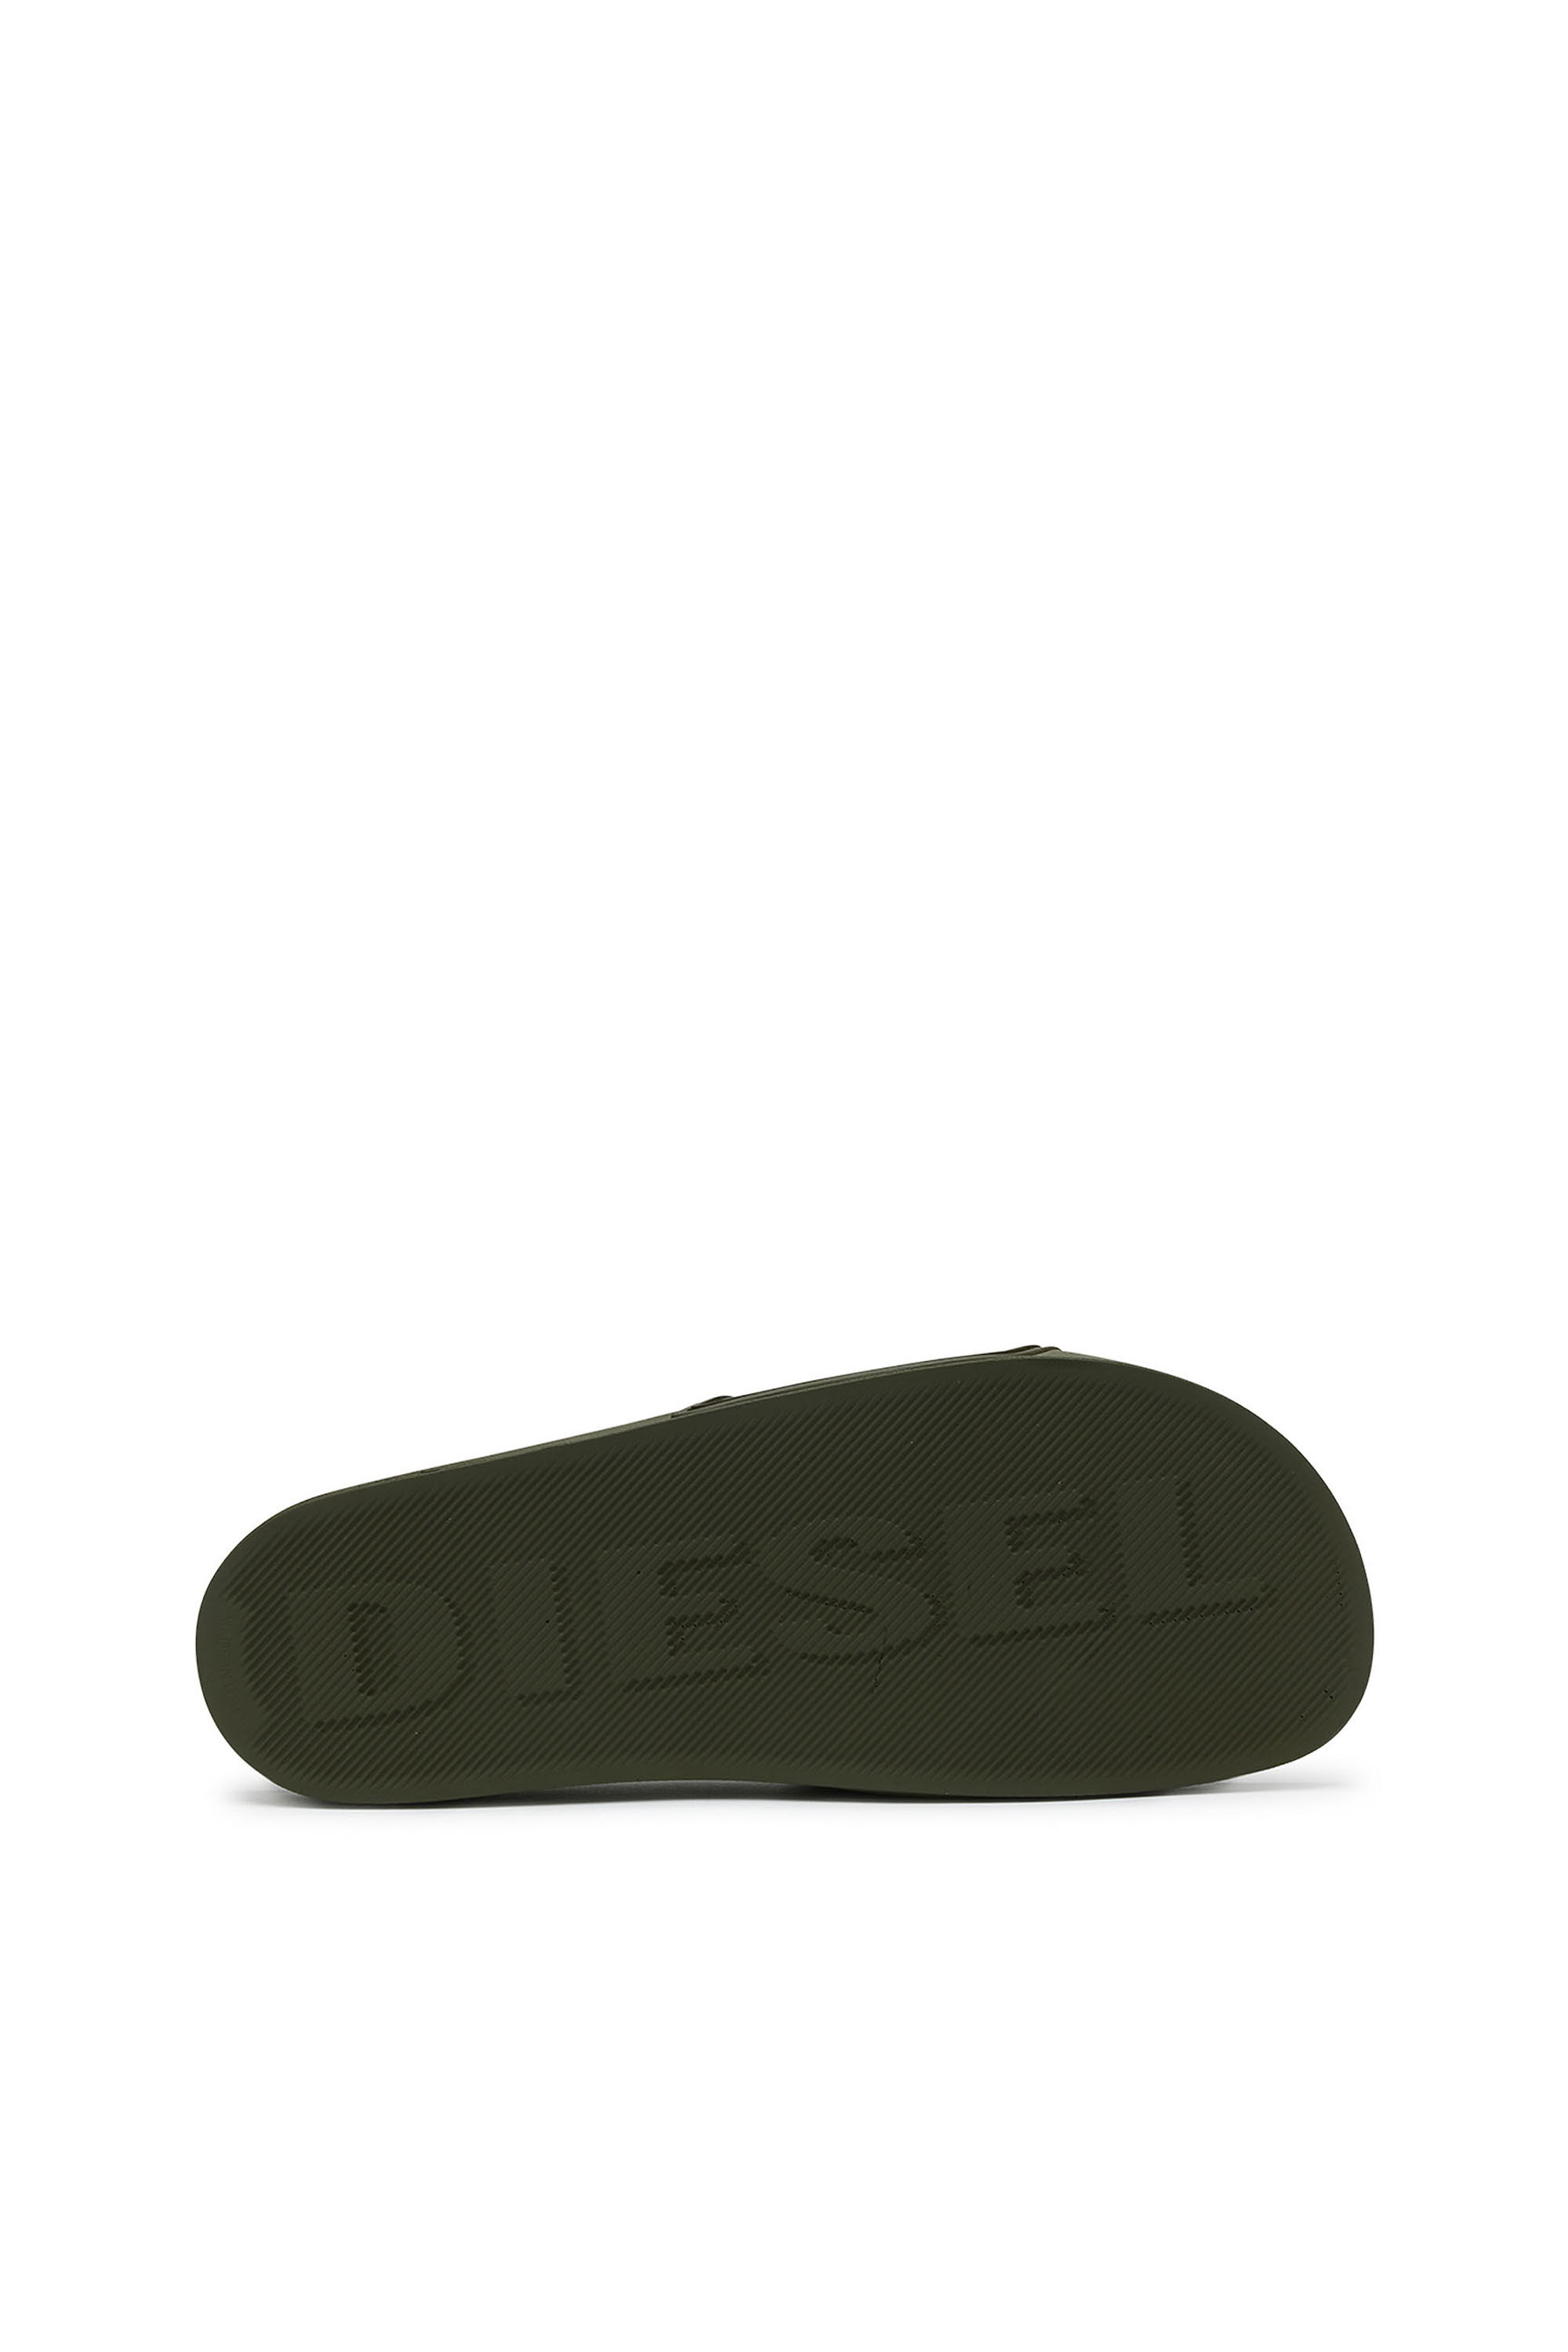 Diesel - SA-MAYEMI CC, Olive Green - Image 5